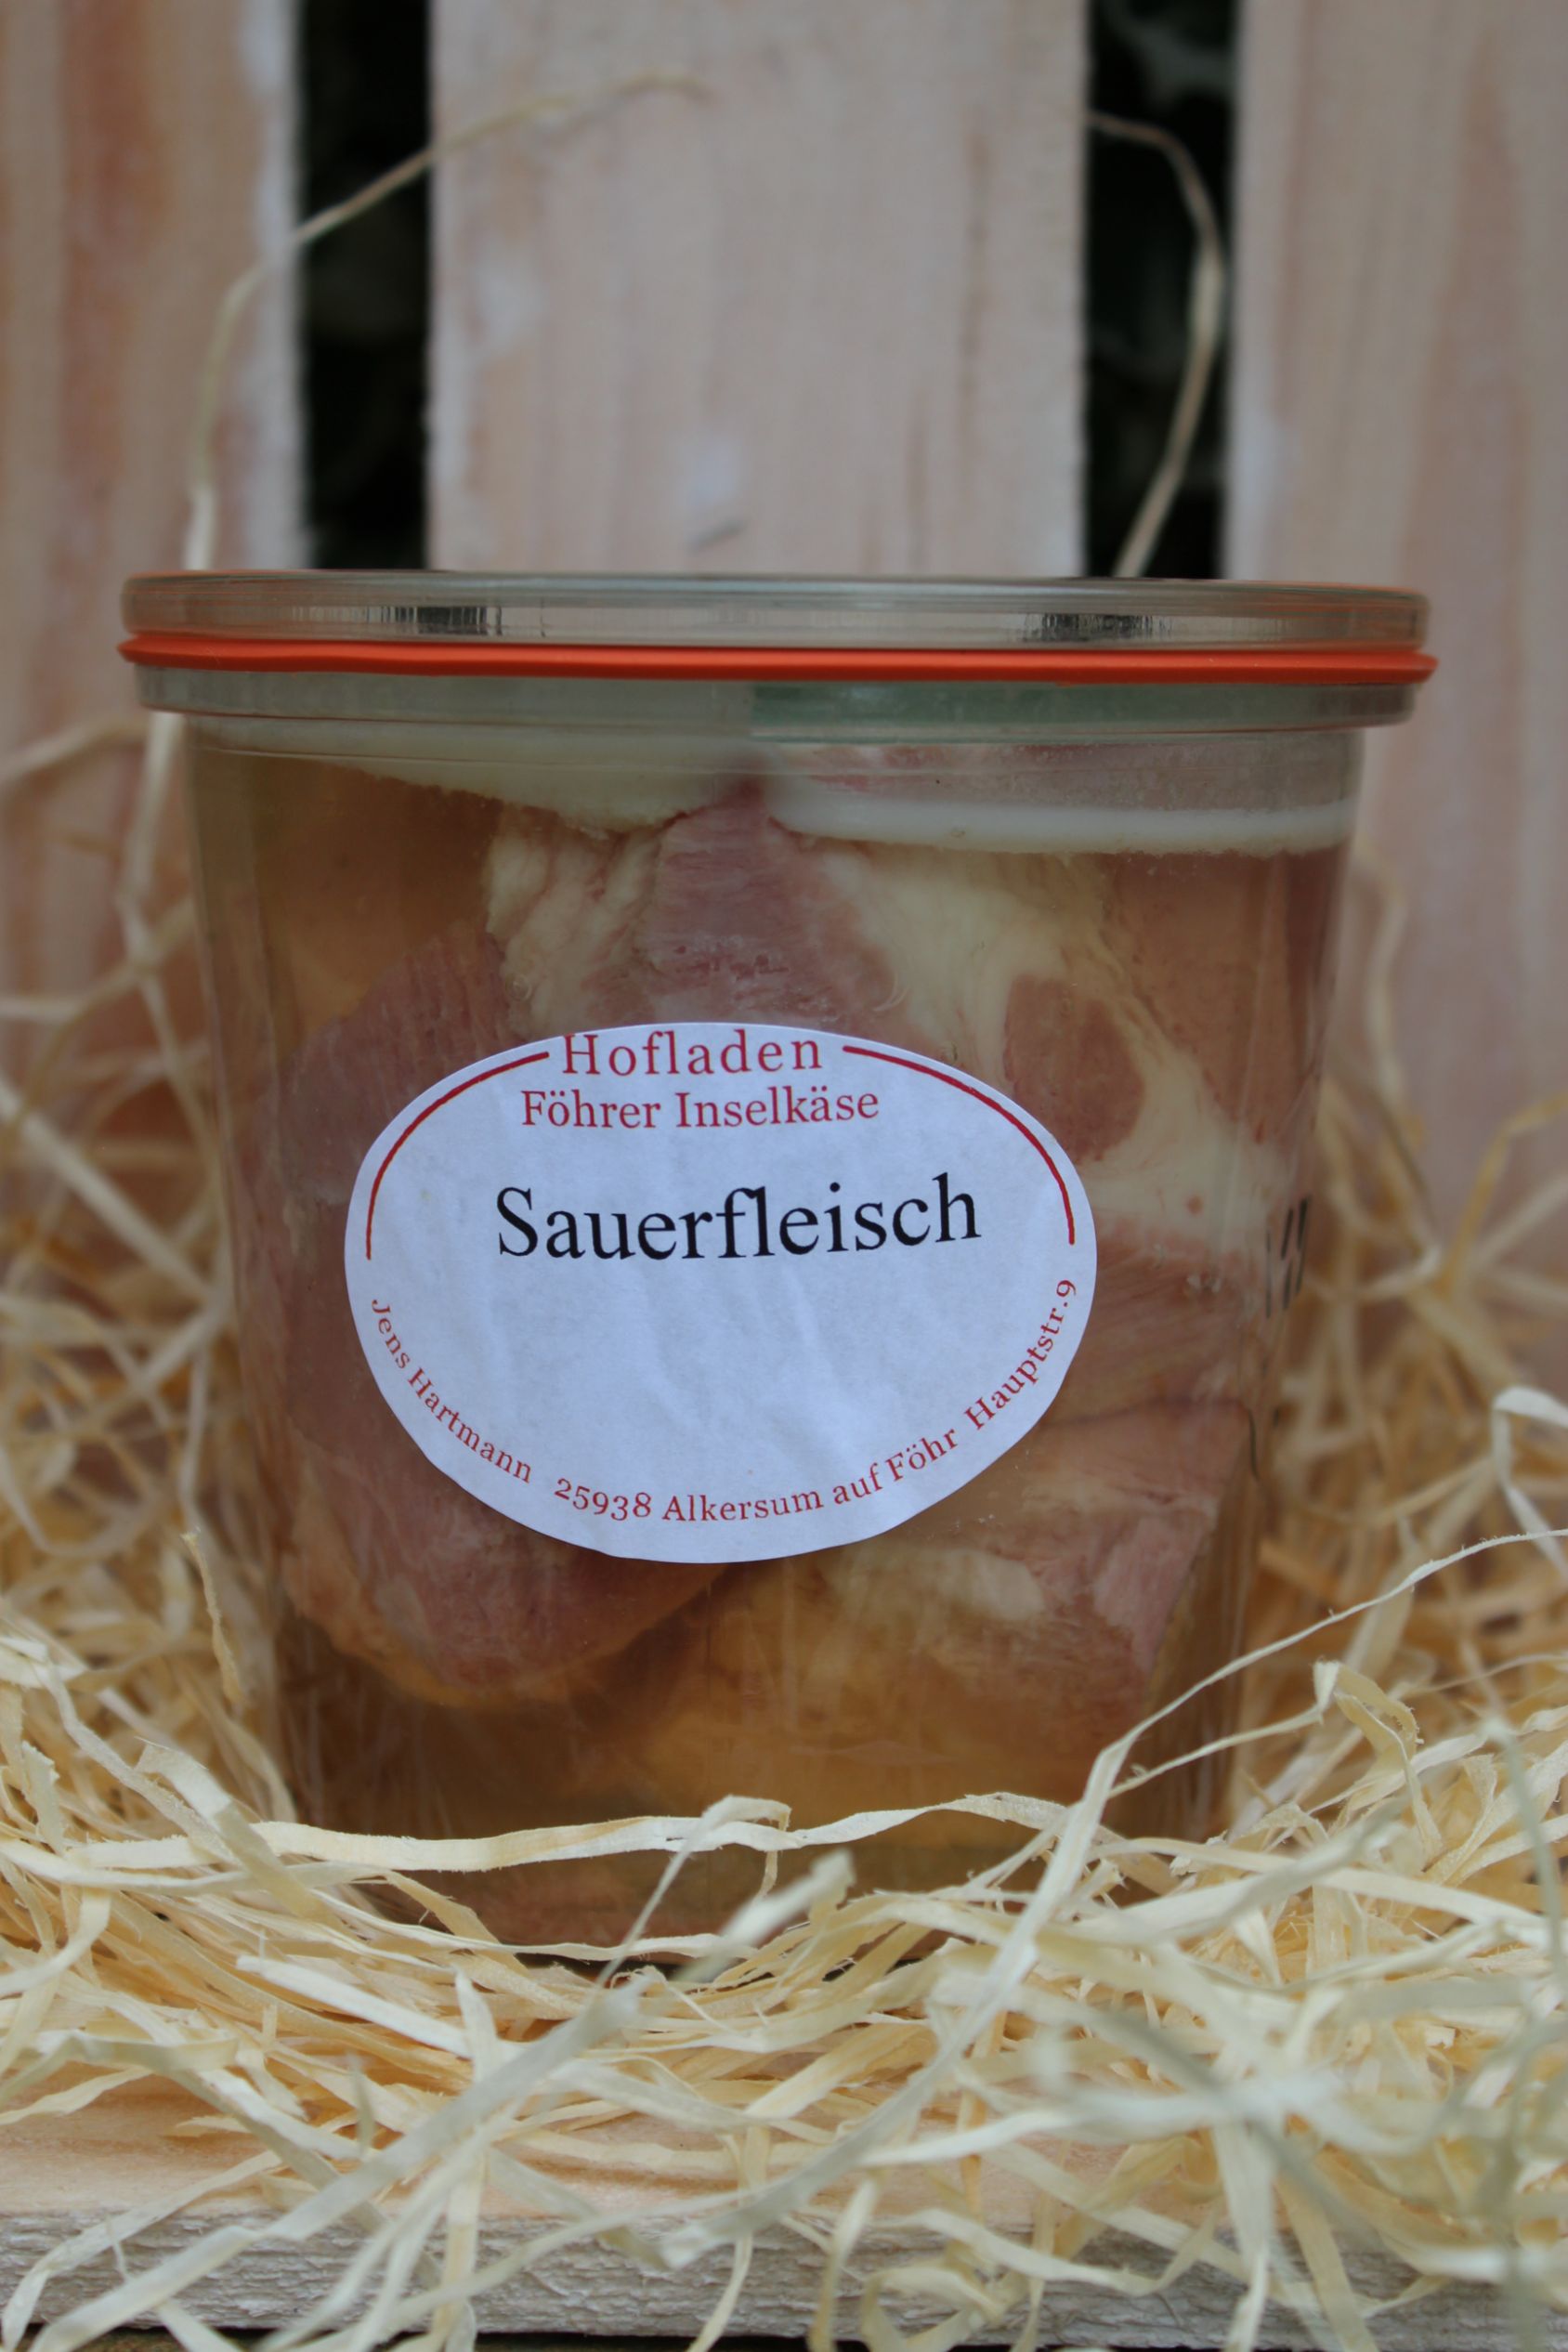 Sauerfleisch - Hofladen Föhrer